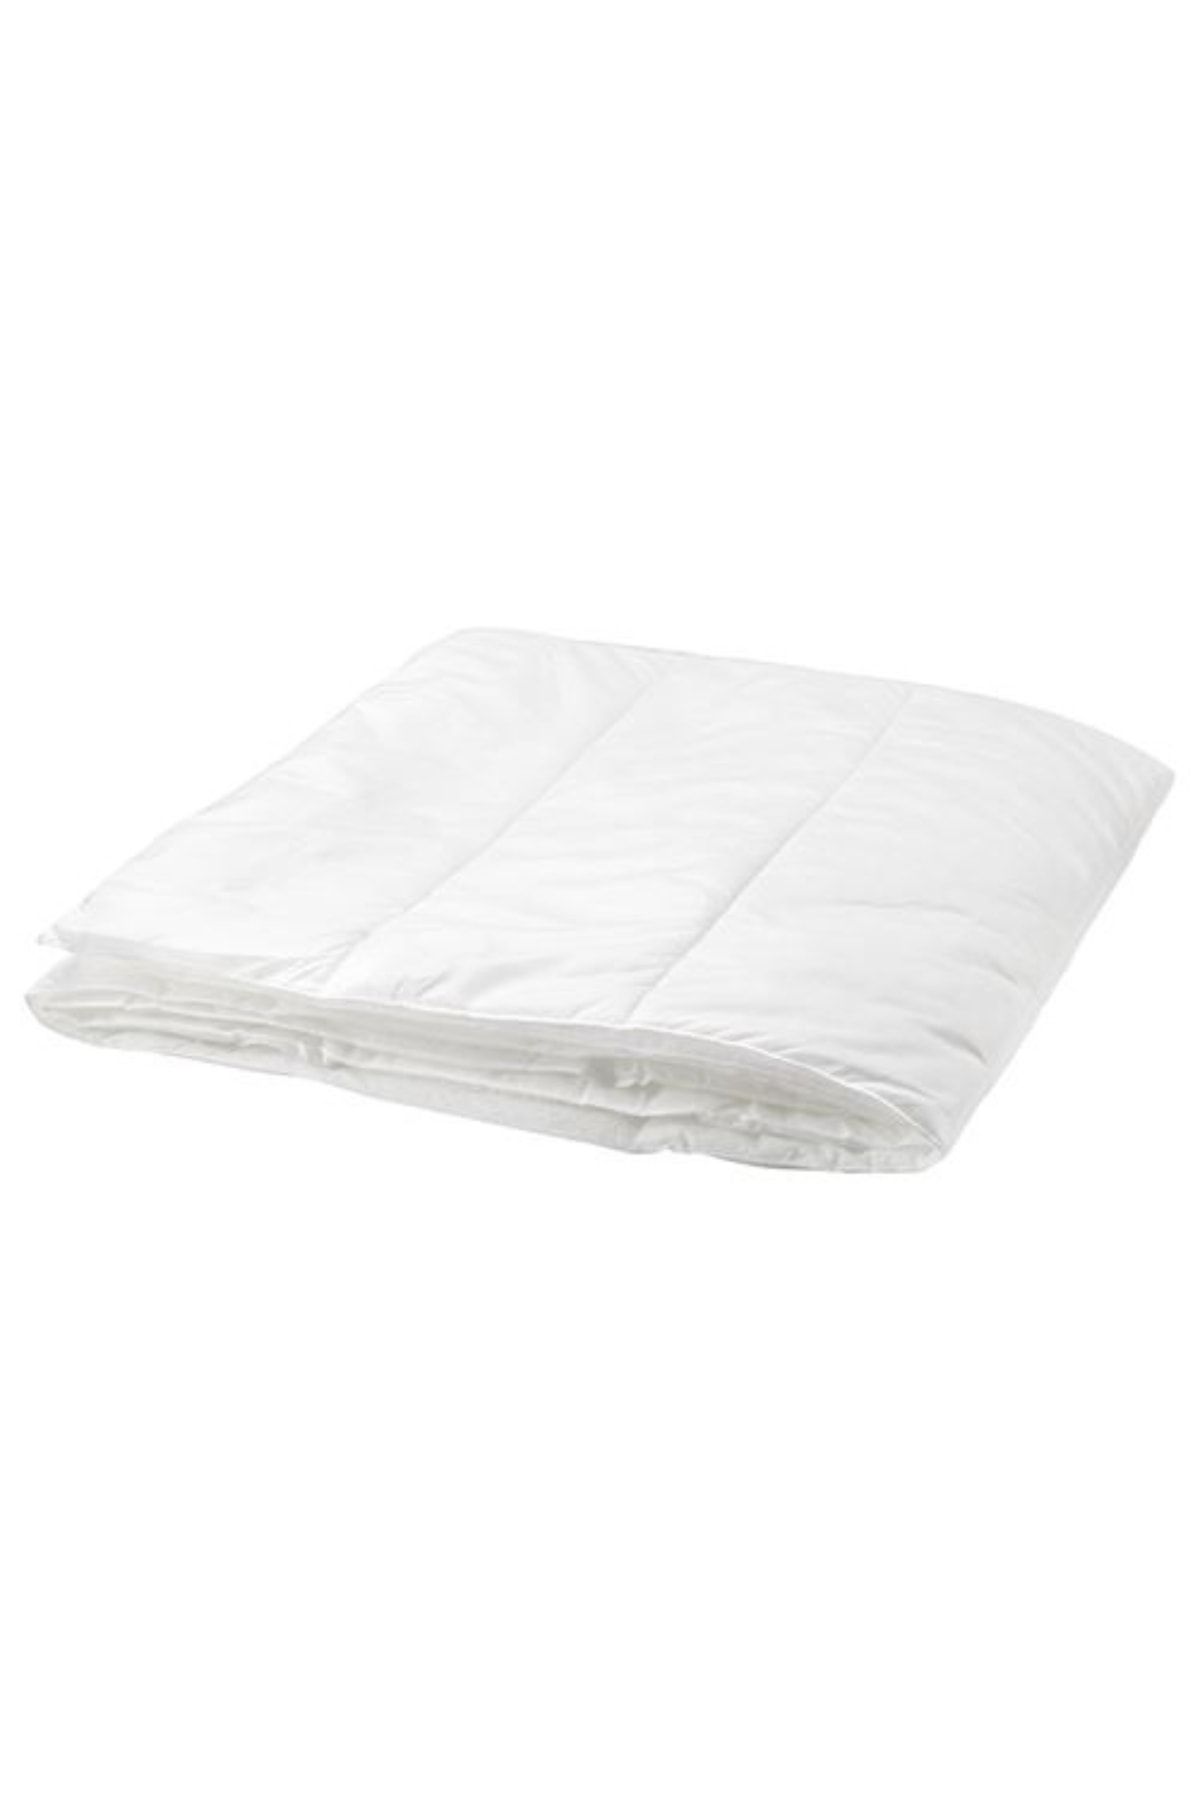 IKEA Pamuk Polyester Silvertopp Çift Kişilik Yorgan 240x220 Cm Beyaz Beyaz Elyaf 200 x 240